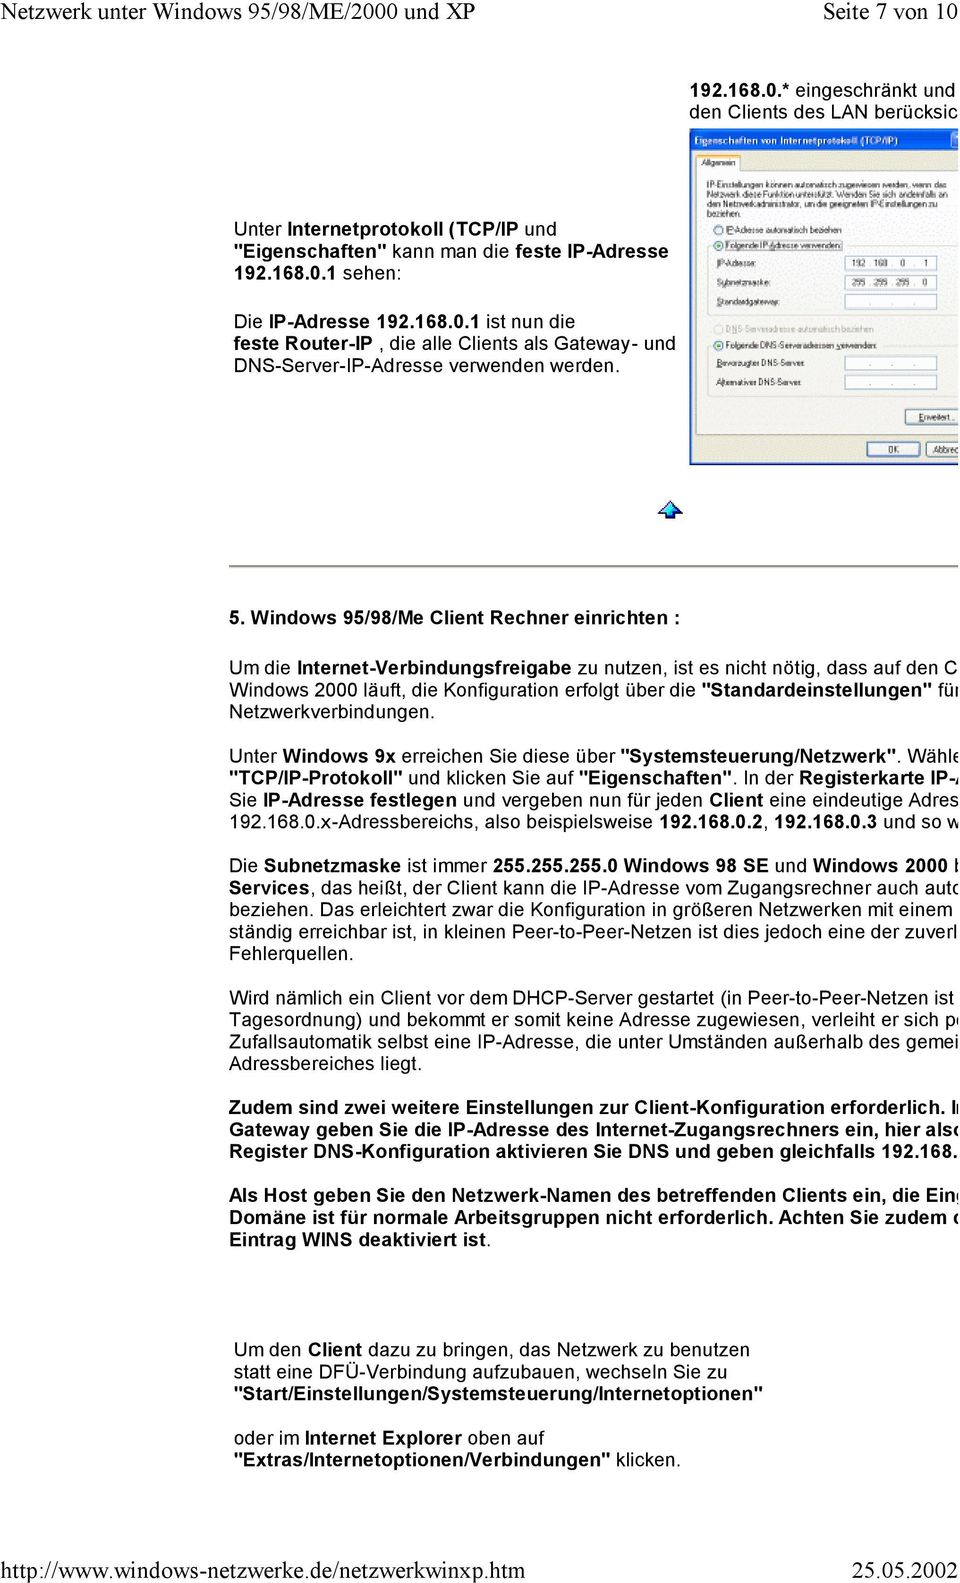 Windows 95/98/Me Client Rechner einrichten : Um die Internet-Verbindungsfreigabe zu nutzen, ist es nicht nötig, dass auf den Clients ebenfa Windows 2000 läuft, die Konfiguration erfolgt über die